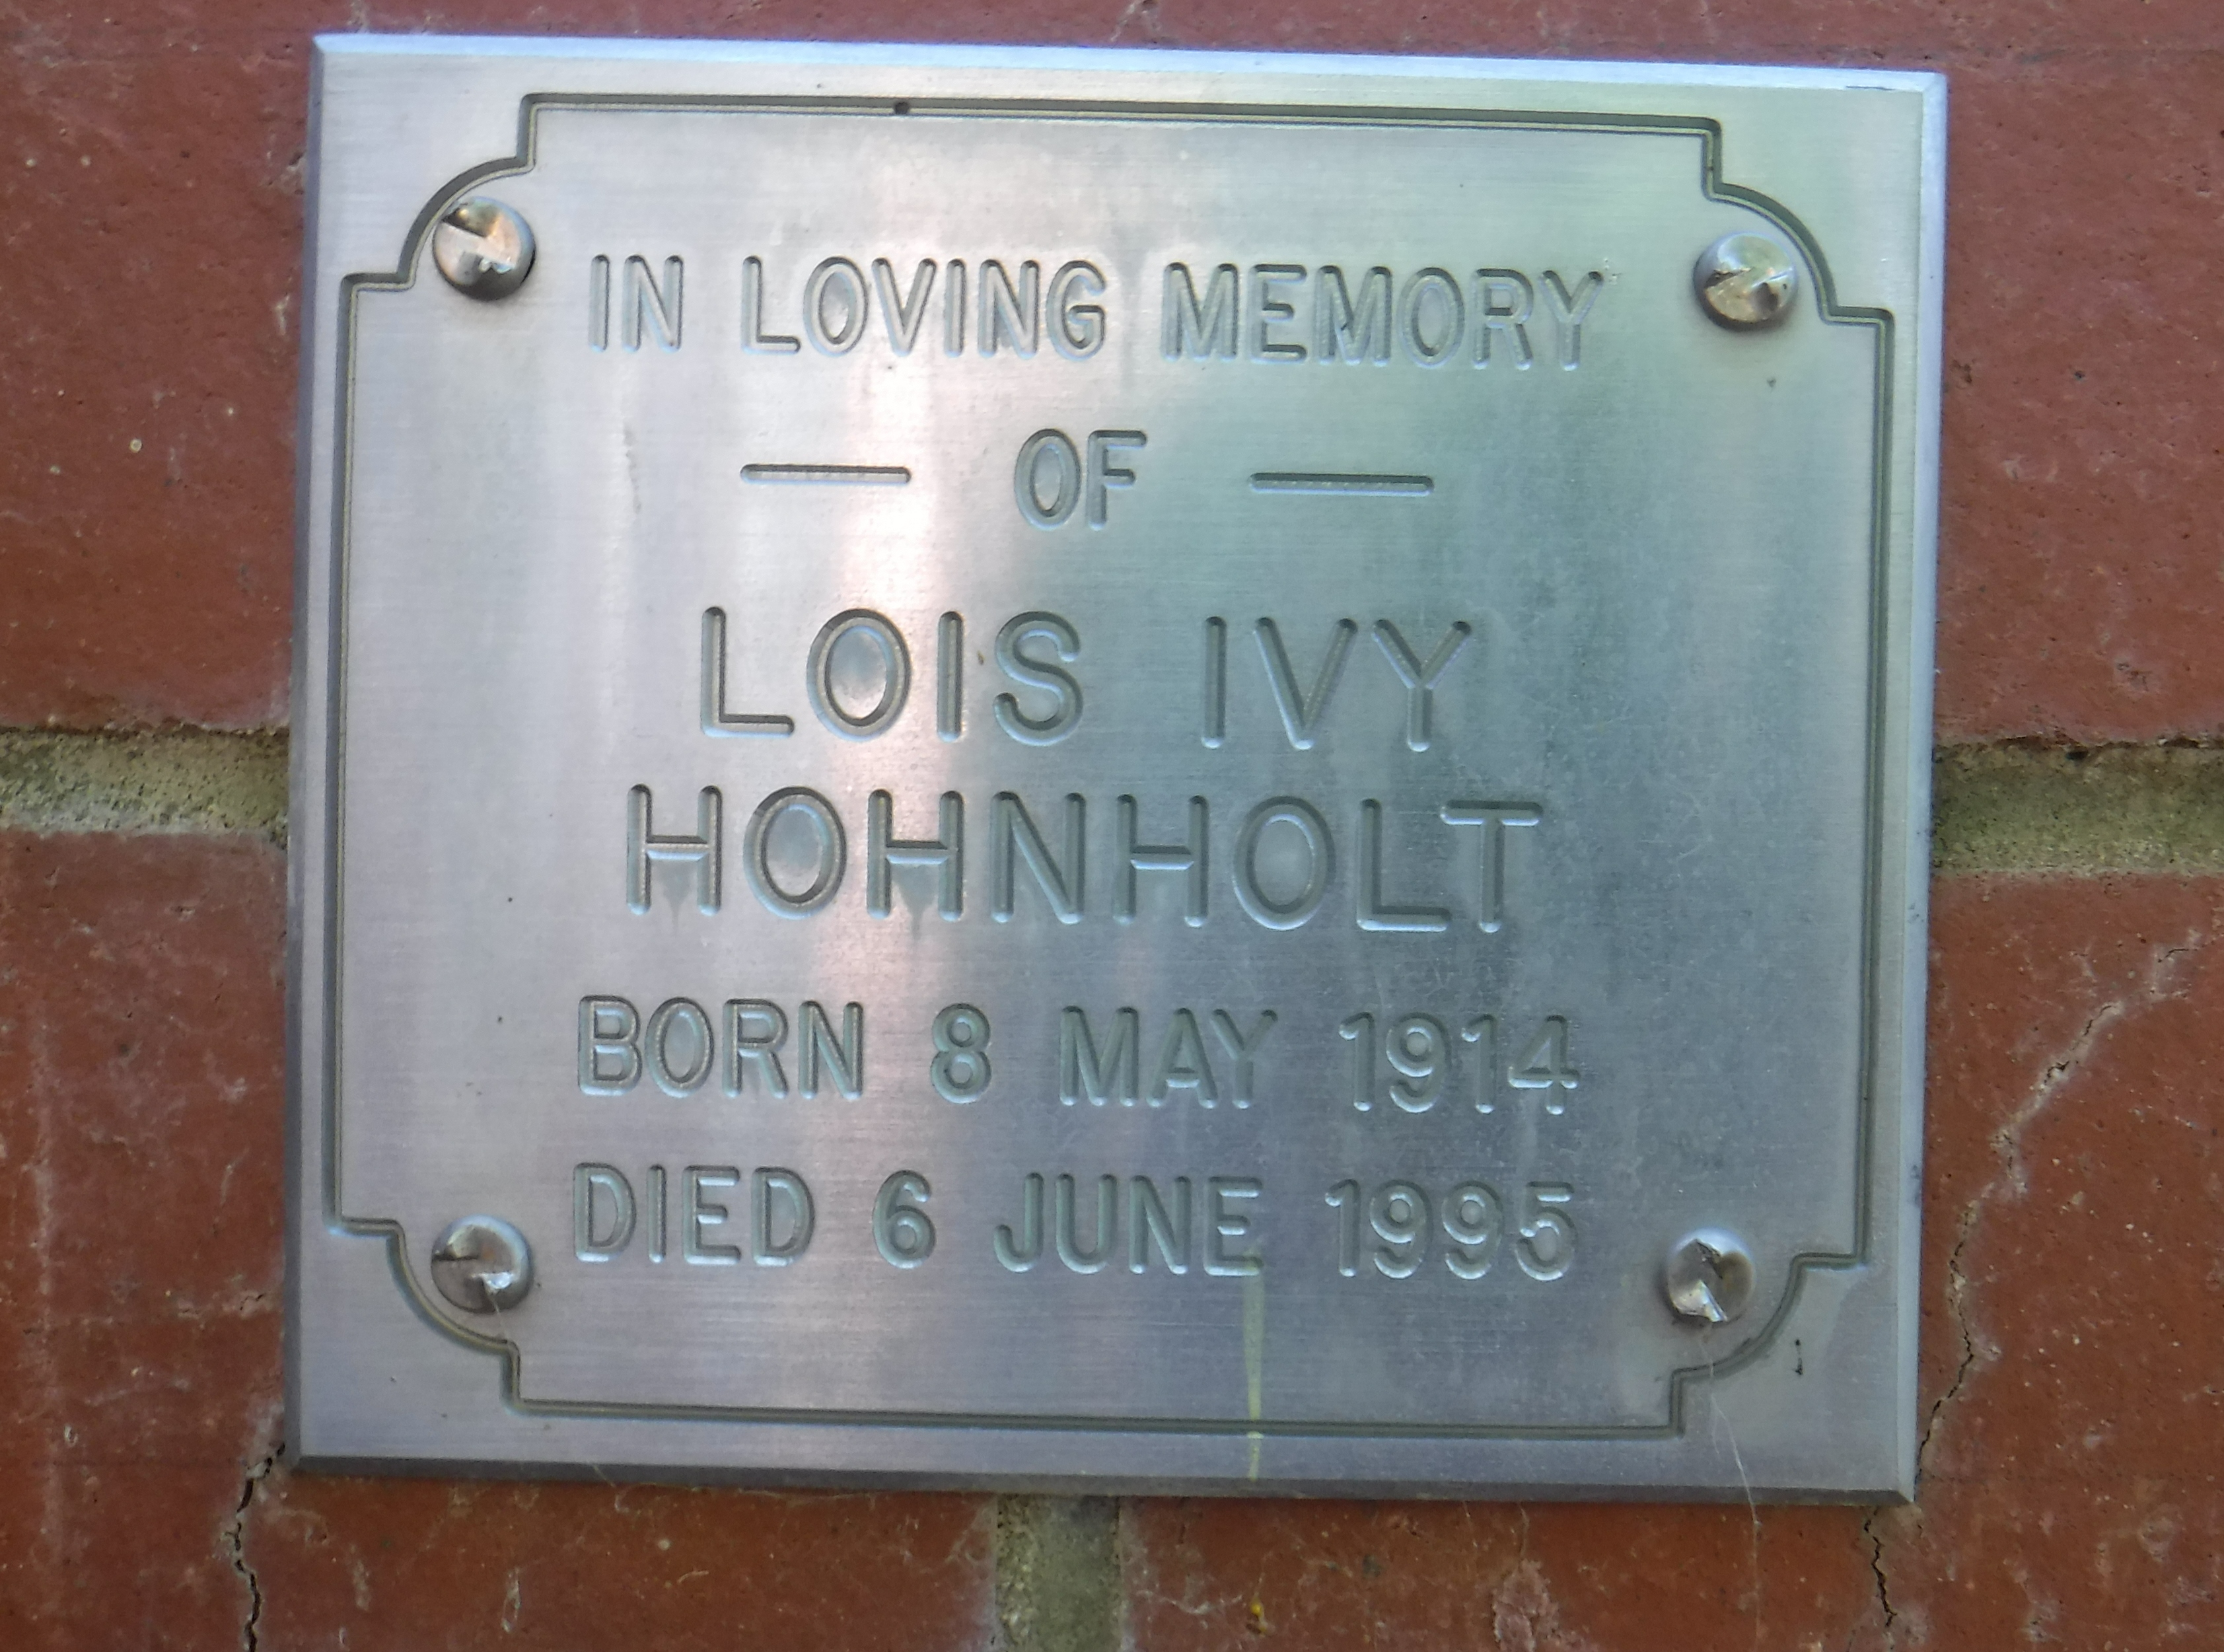 HOHNHOLT Lois.JPG